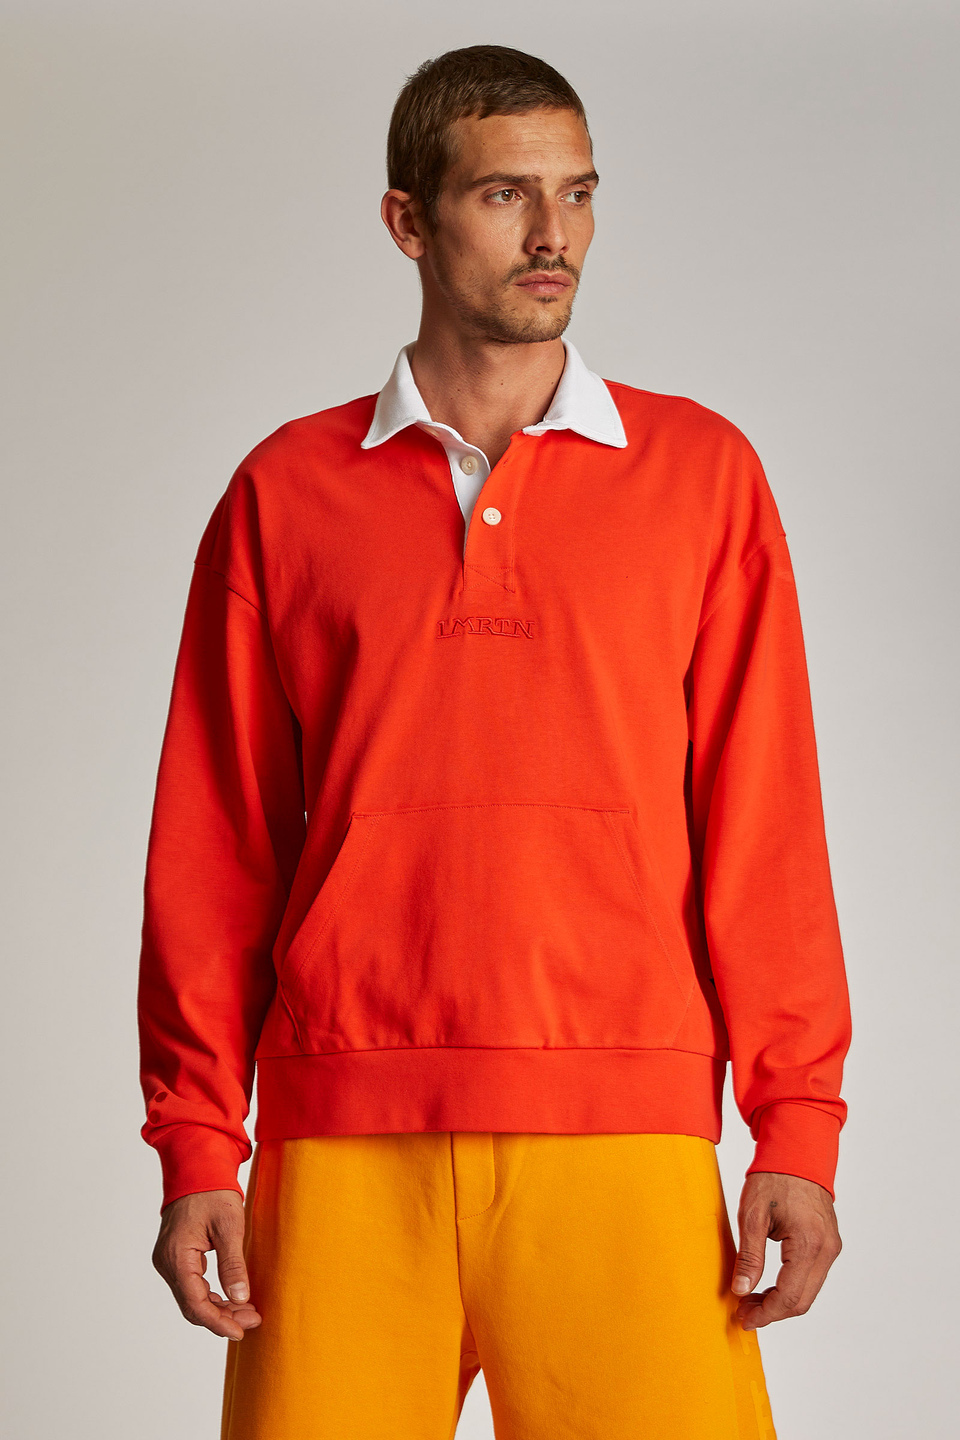 Herren-Sweatshirt aus 100 % Baumwolle mit einem Kragen in Kontrastoptik, oversized Modell | La Martina - Official Online Shop